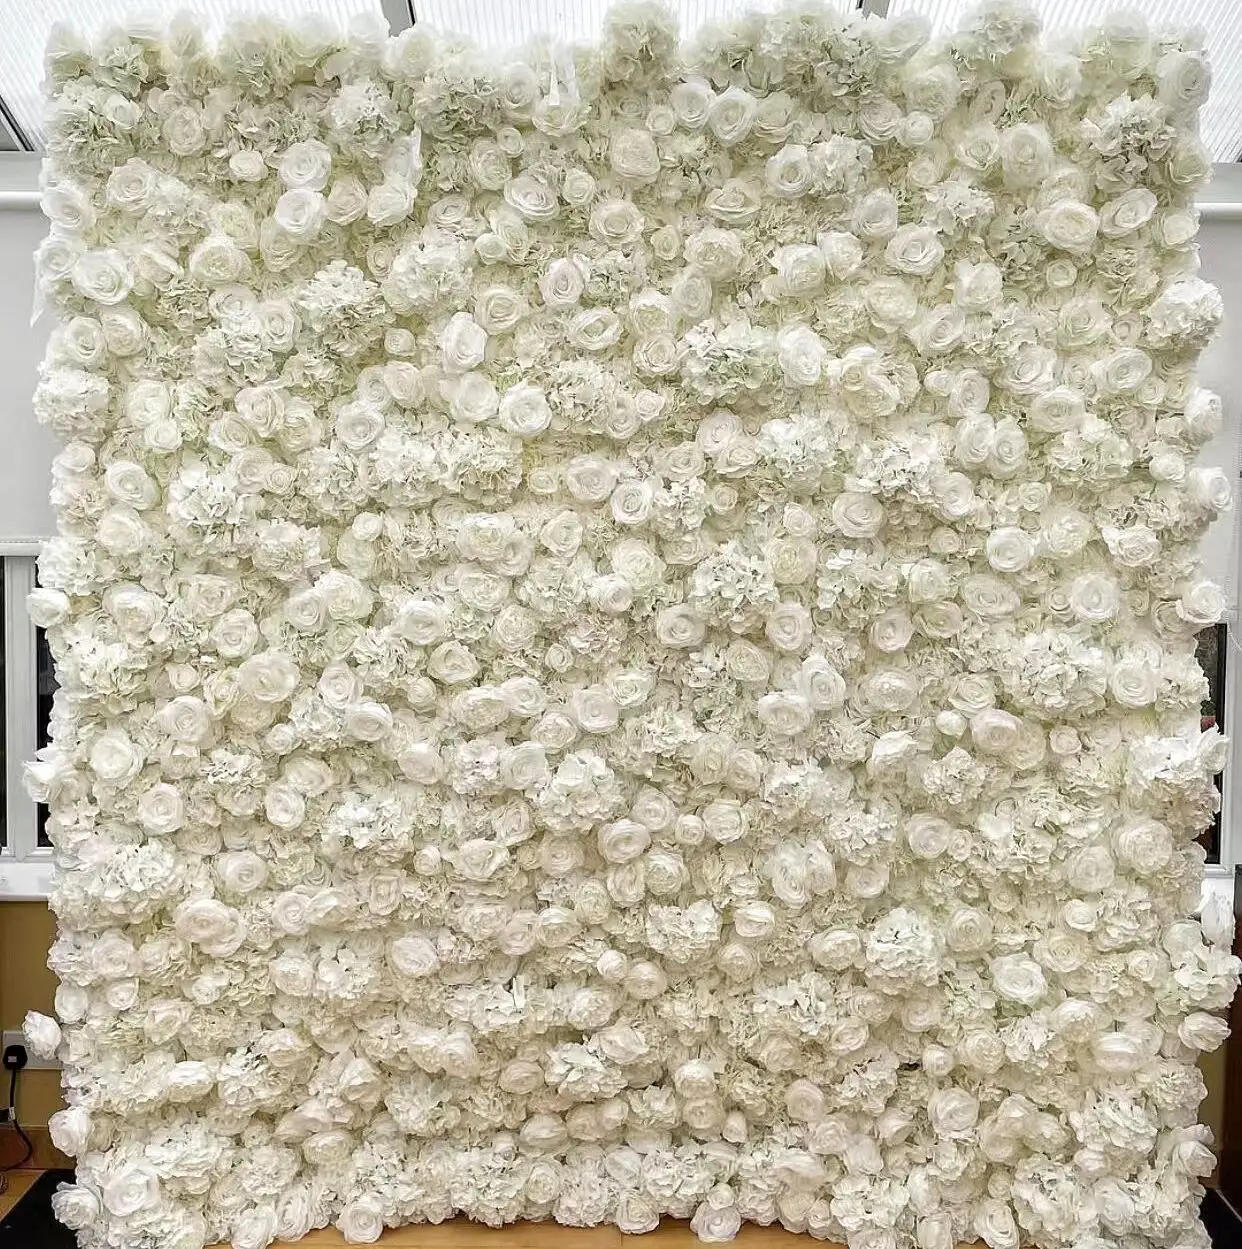 YOPIN-105 angepasste Rose Wand Hintergrund künstliche Blumen wand für Hochzeits dekoration